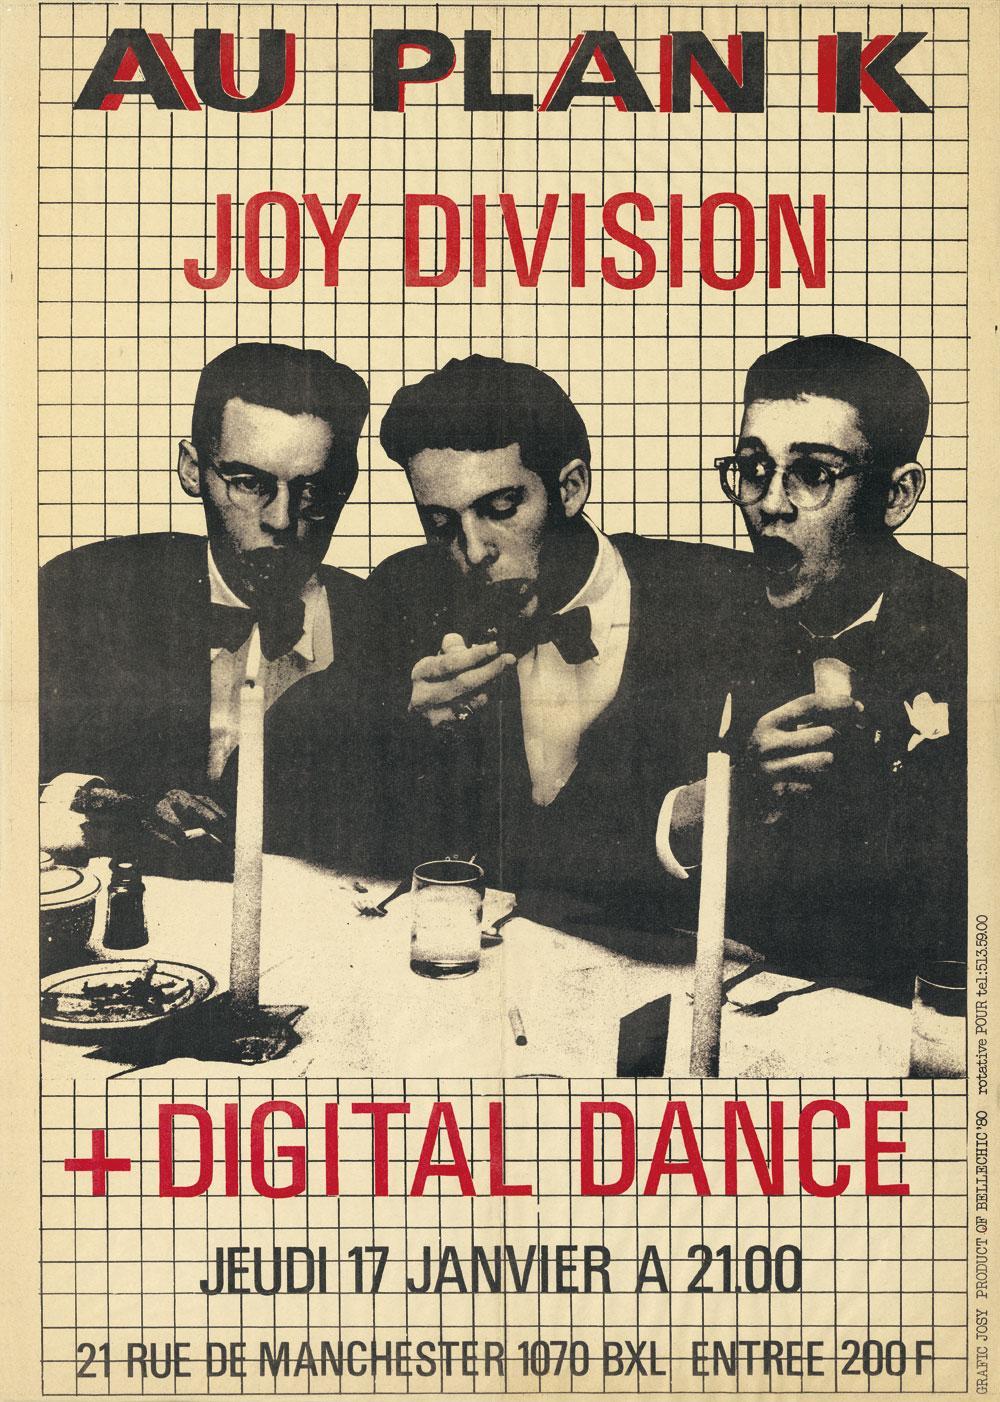 Affiche de Jocelyne Coster pour un concert de Joy Division et Digital Dance au Plan K à Bruxelles, 1980.